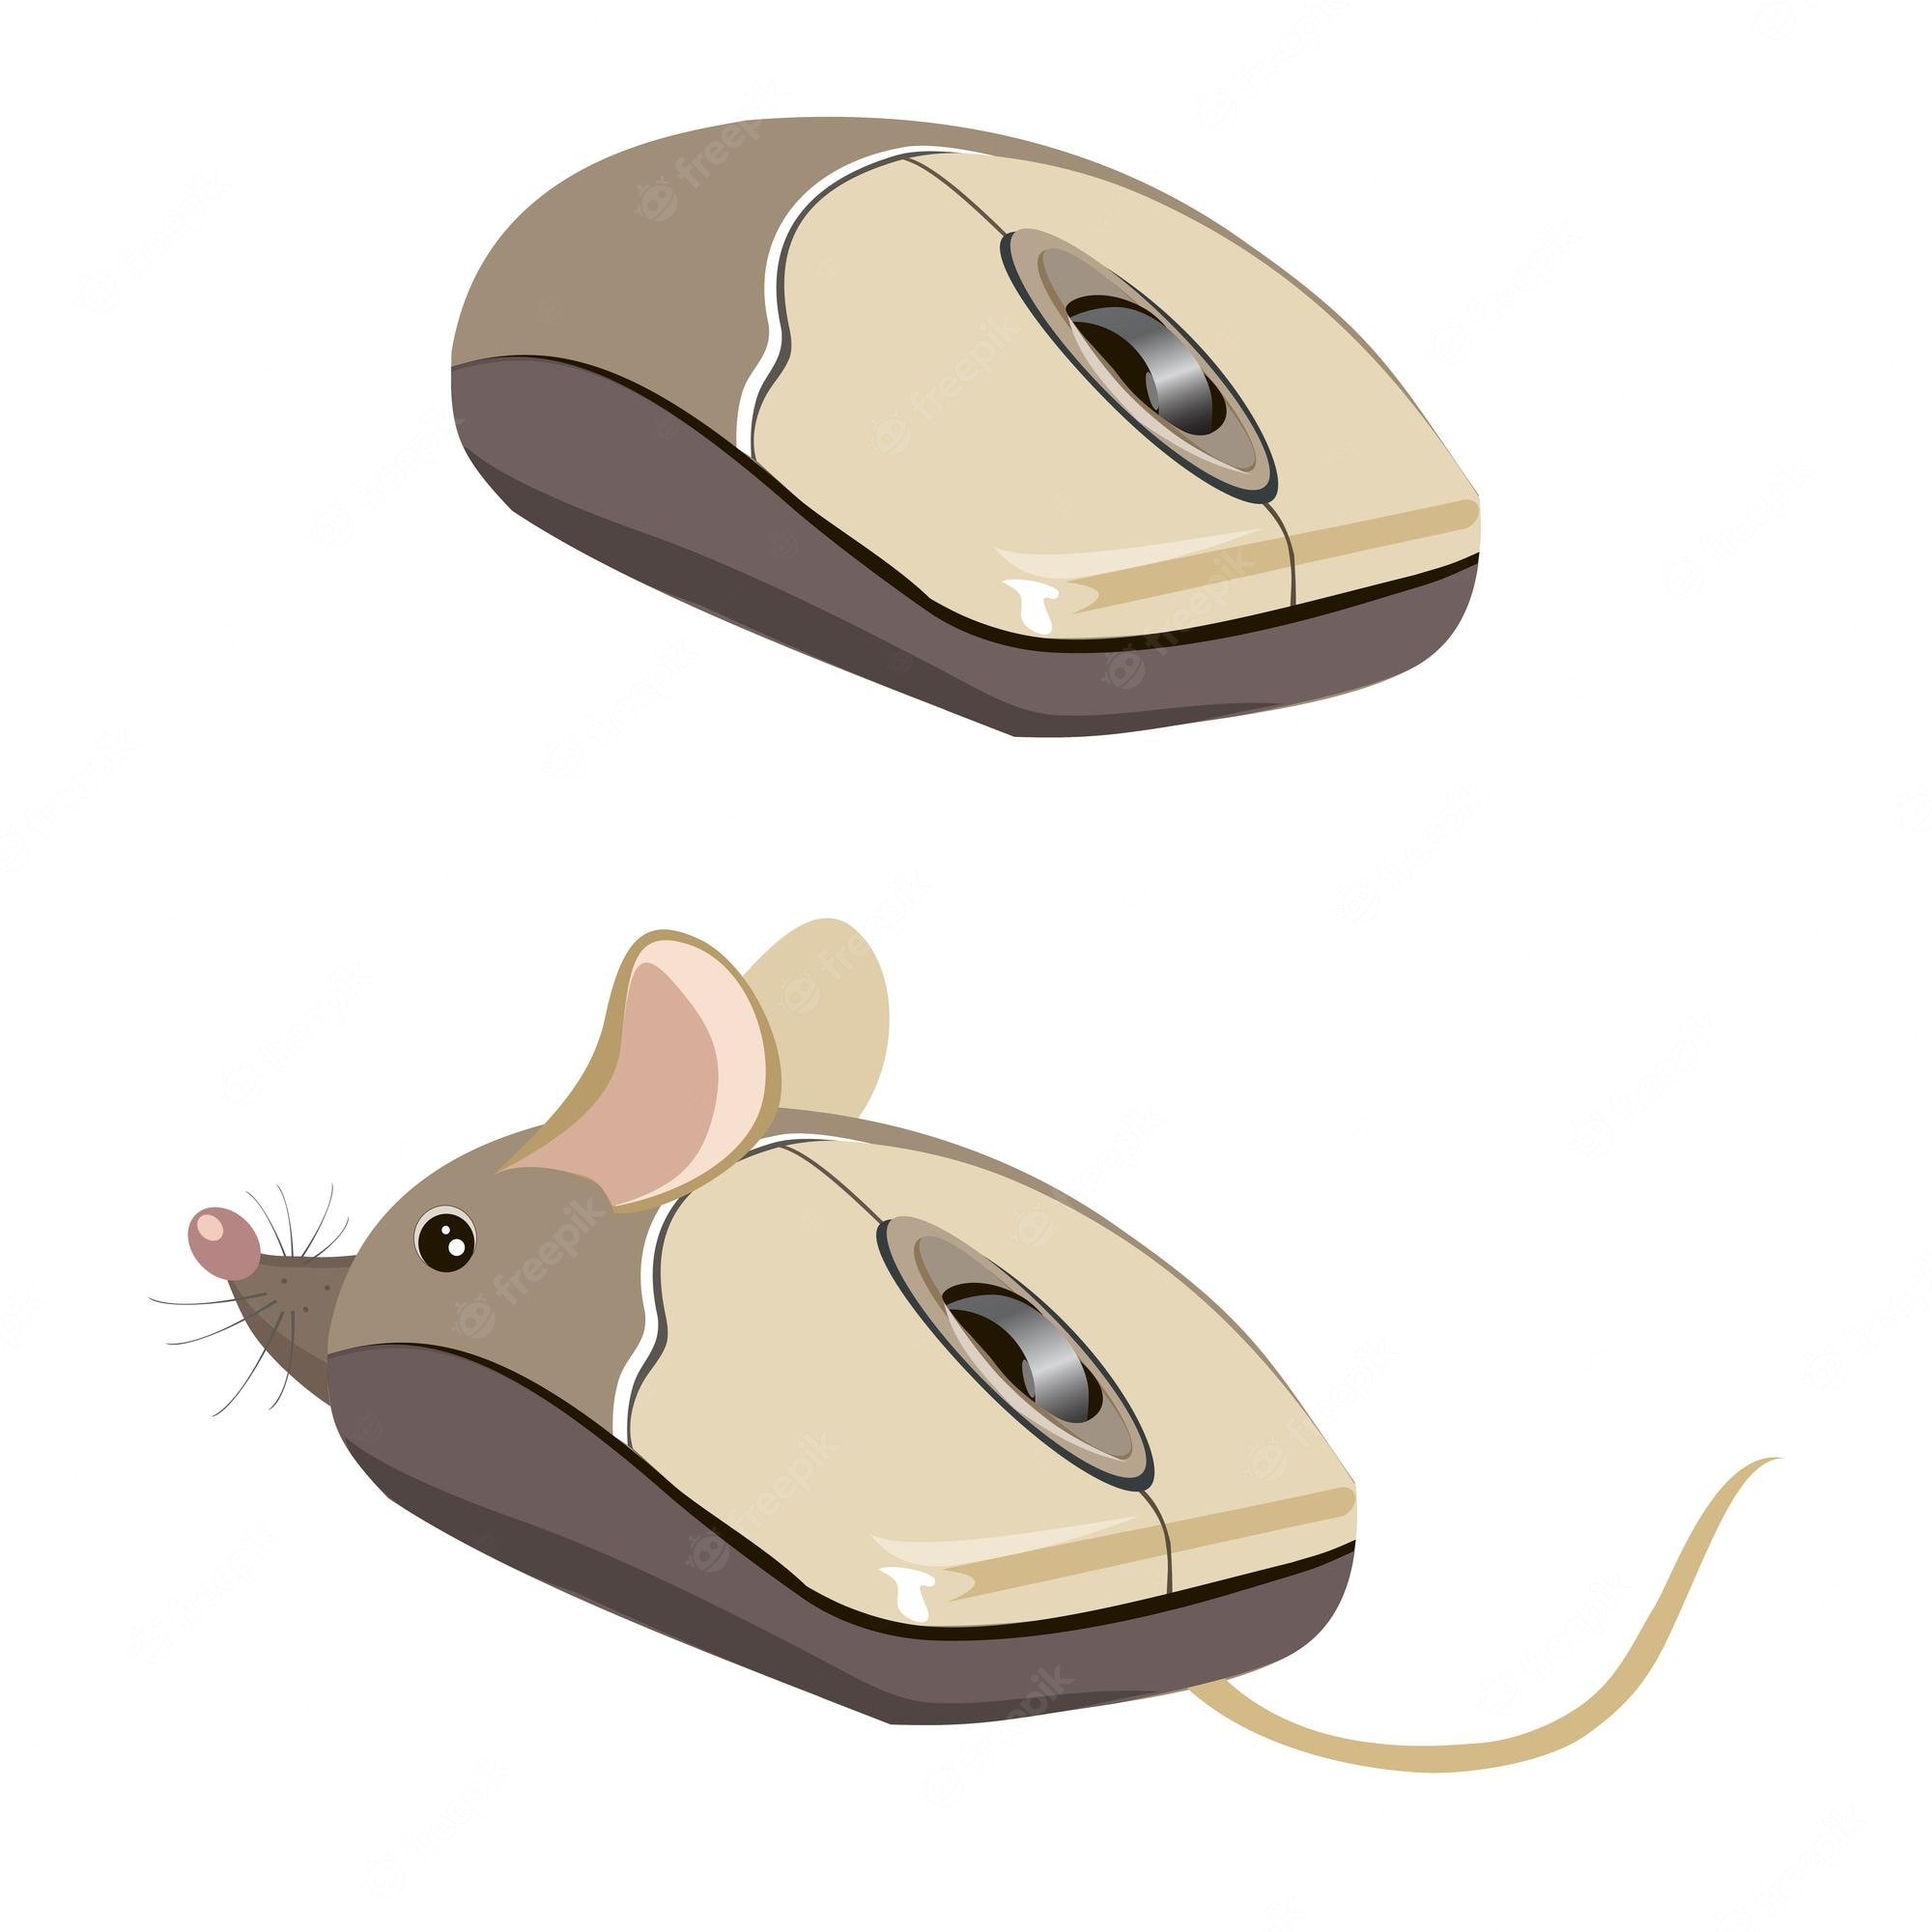 Развитие мышей. Компьютерная мышь рисунок. Детская компьютерная мышь. Мышка компьютерная рисунок. Изображение компьютерной мыши.